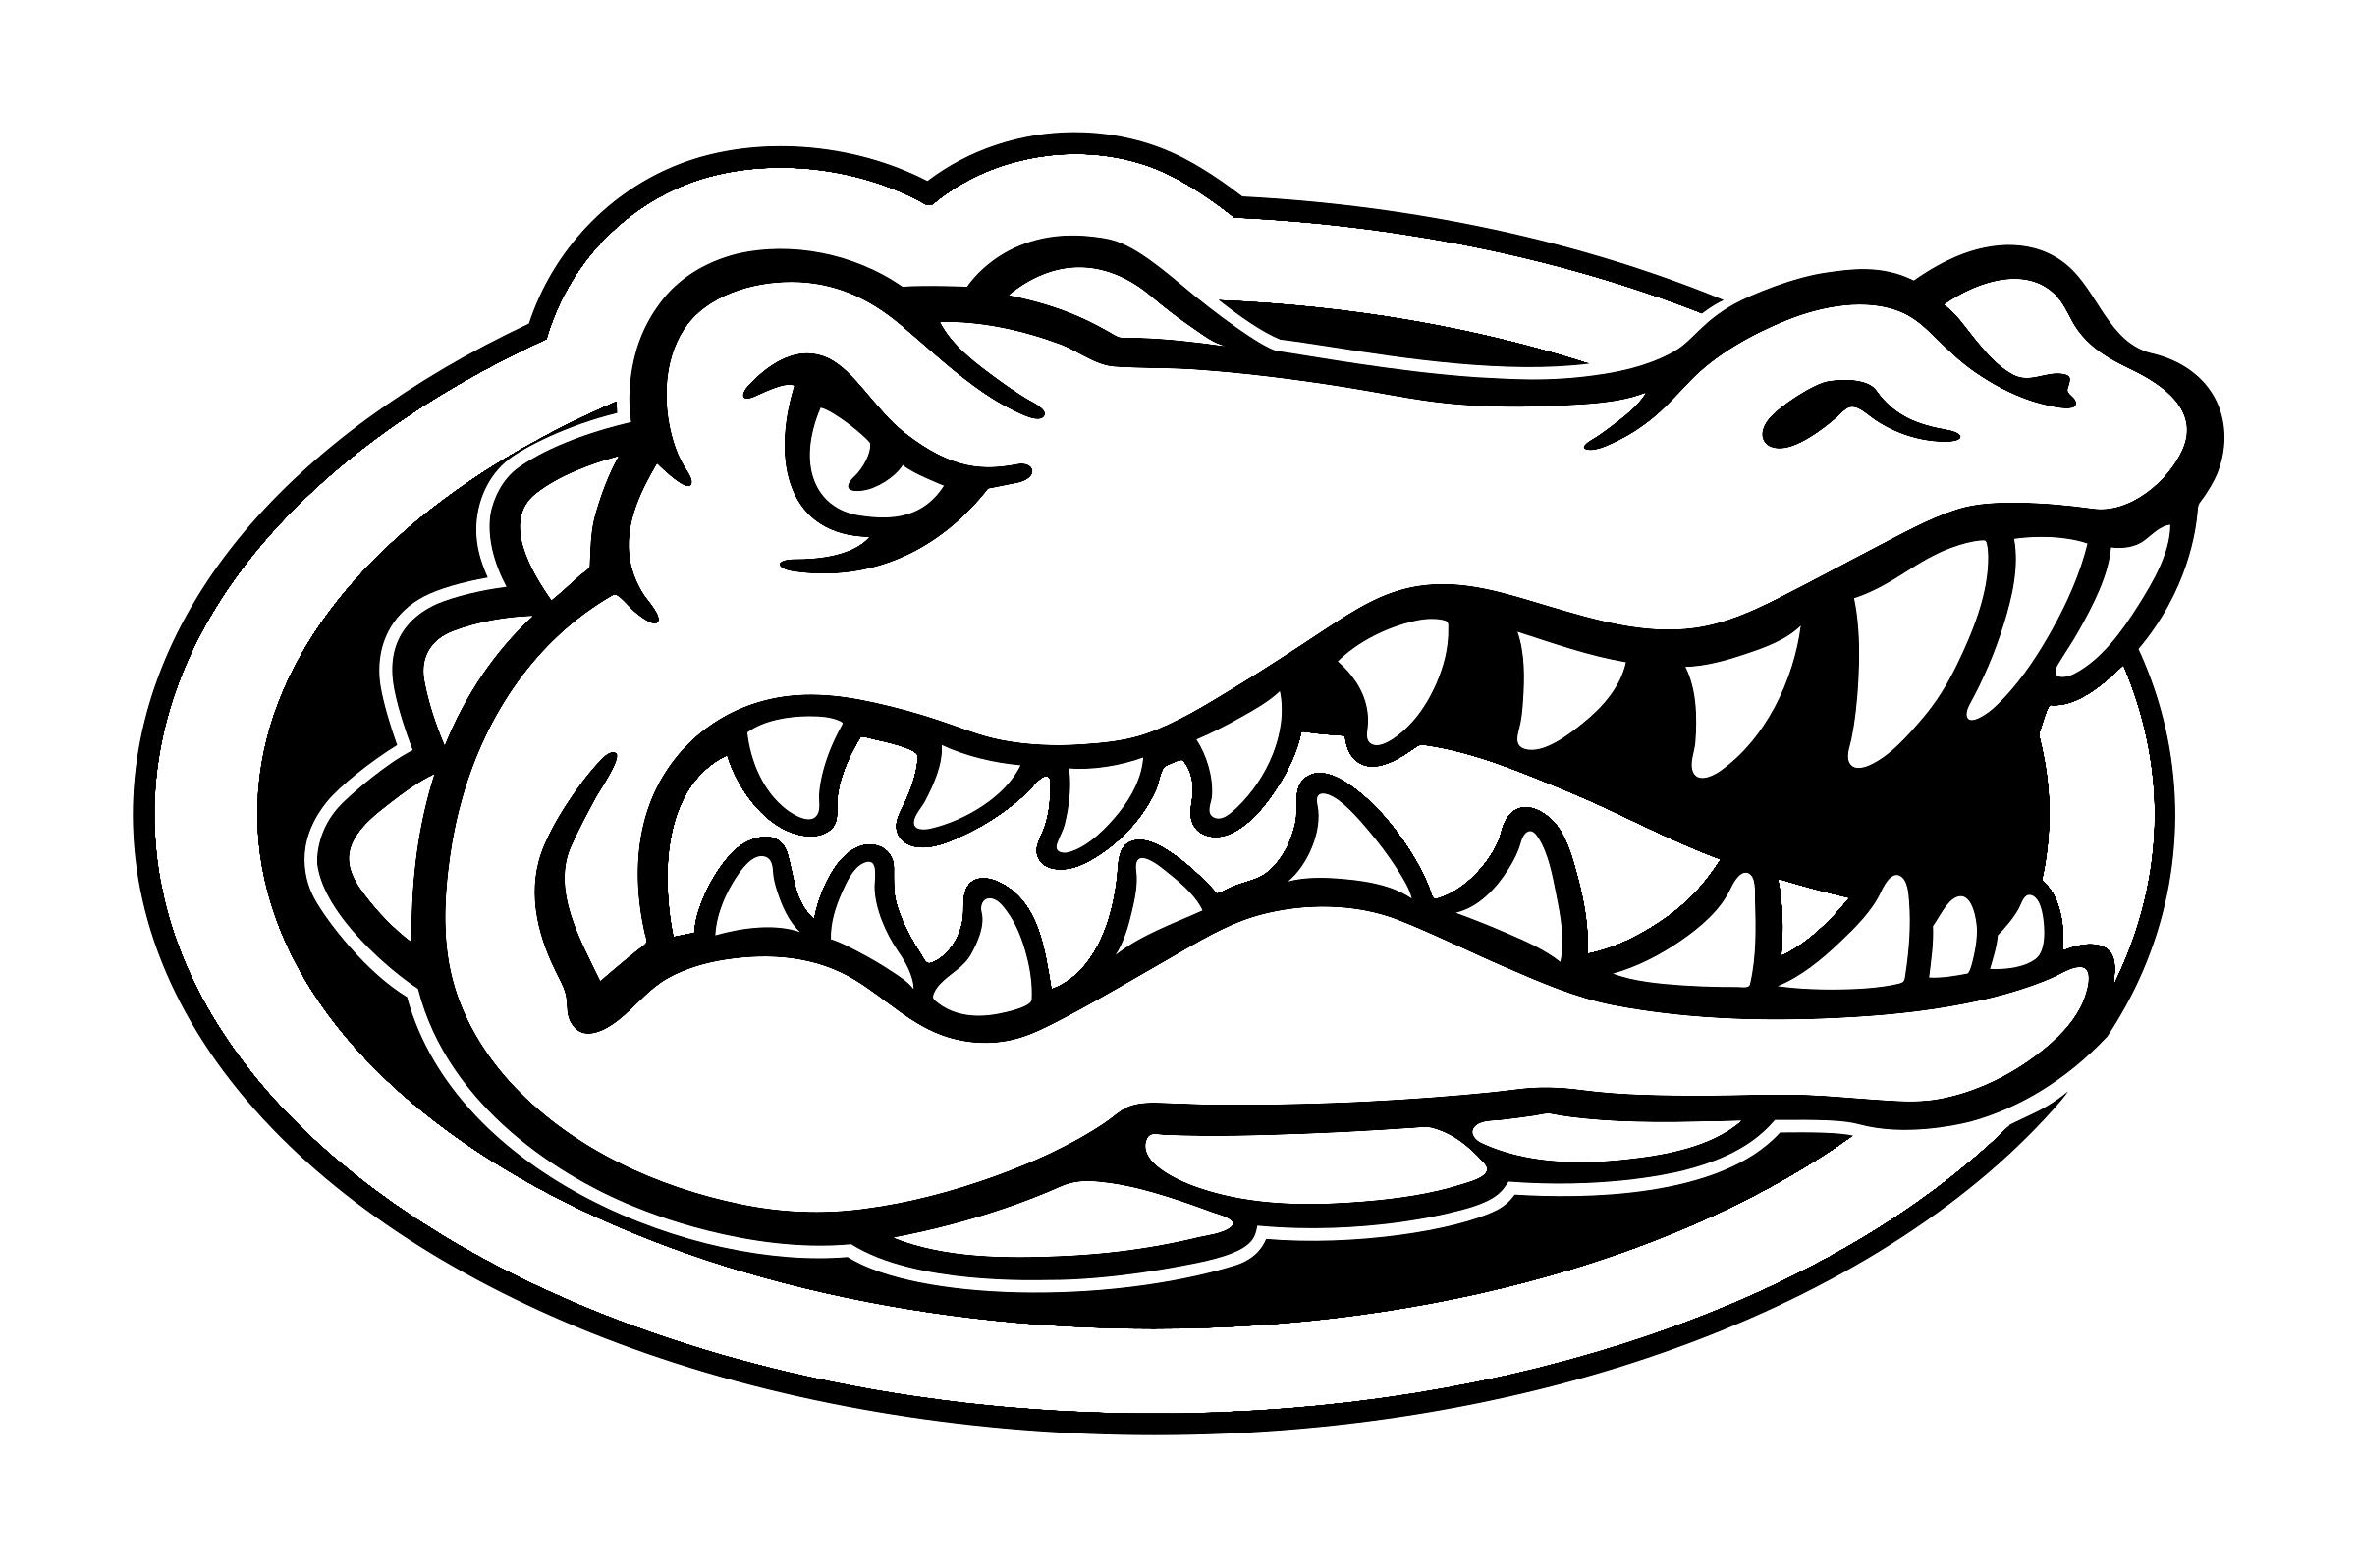 Florida Gators Logo PNG Clipart